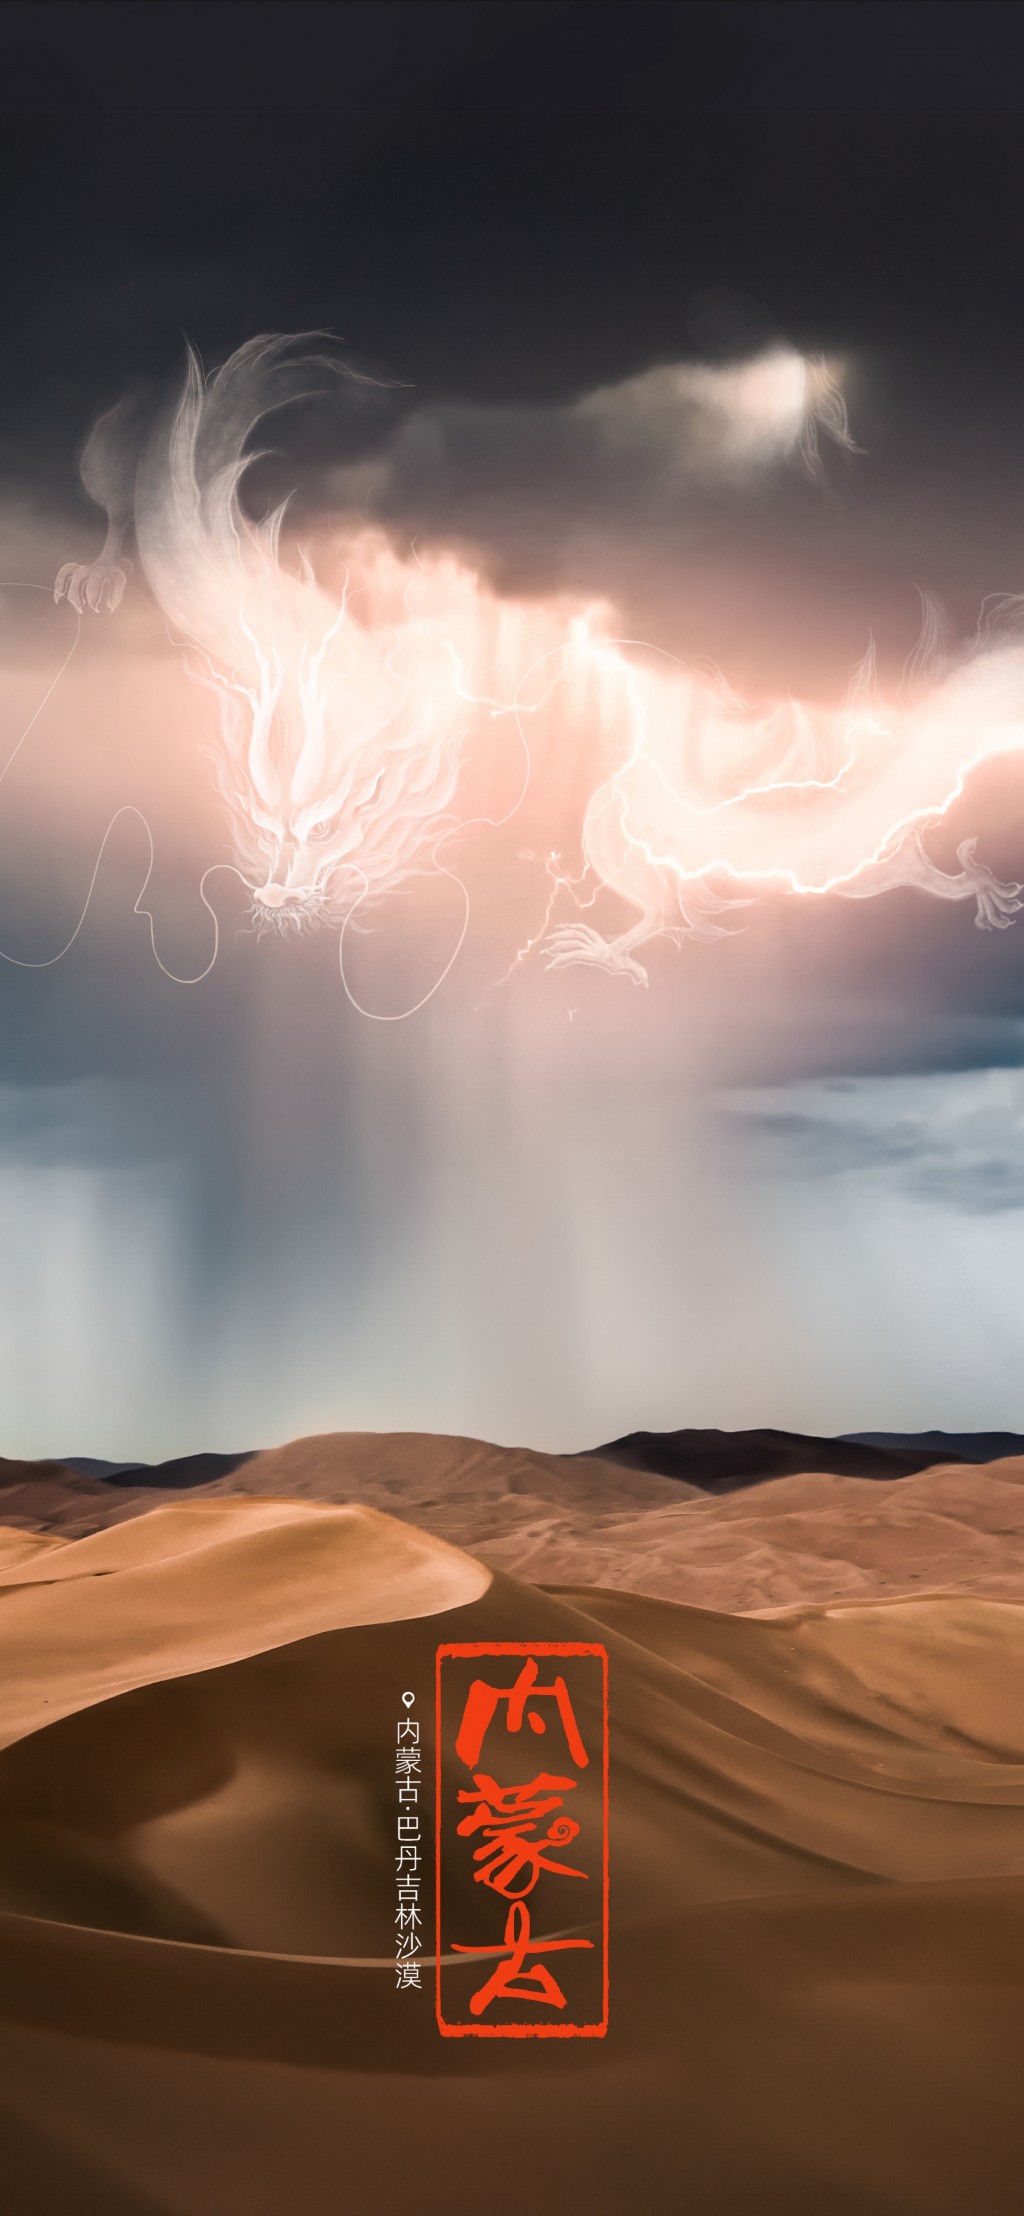 内蒙古巴丹吉林沙漠神龙创意合成风景手机壁纸